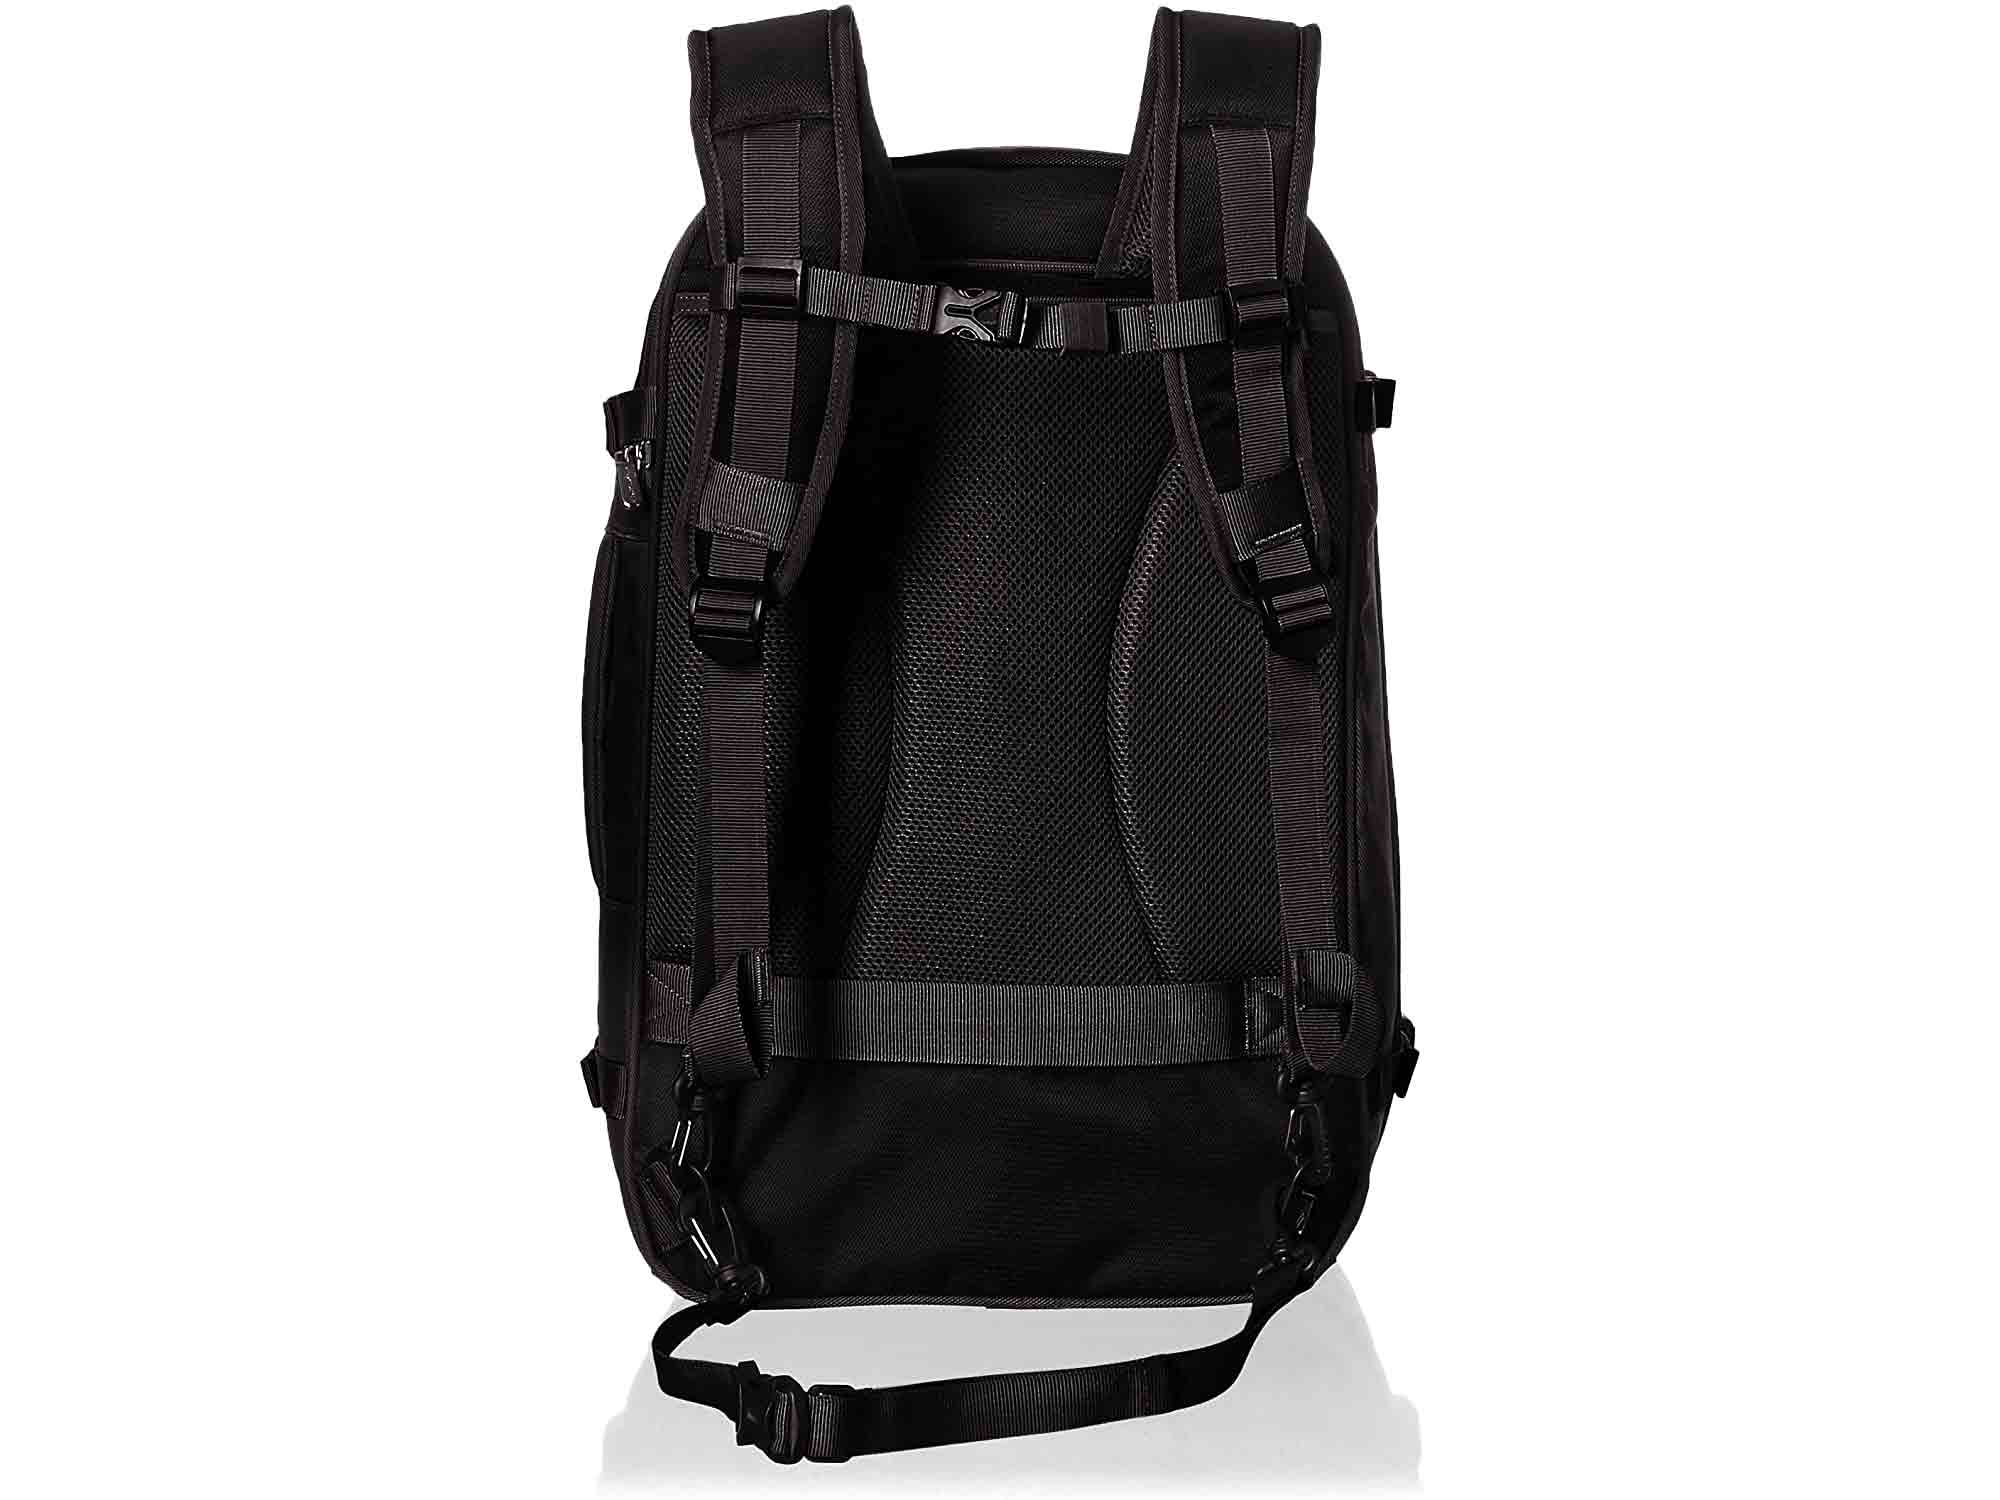 Amazon basics backpack